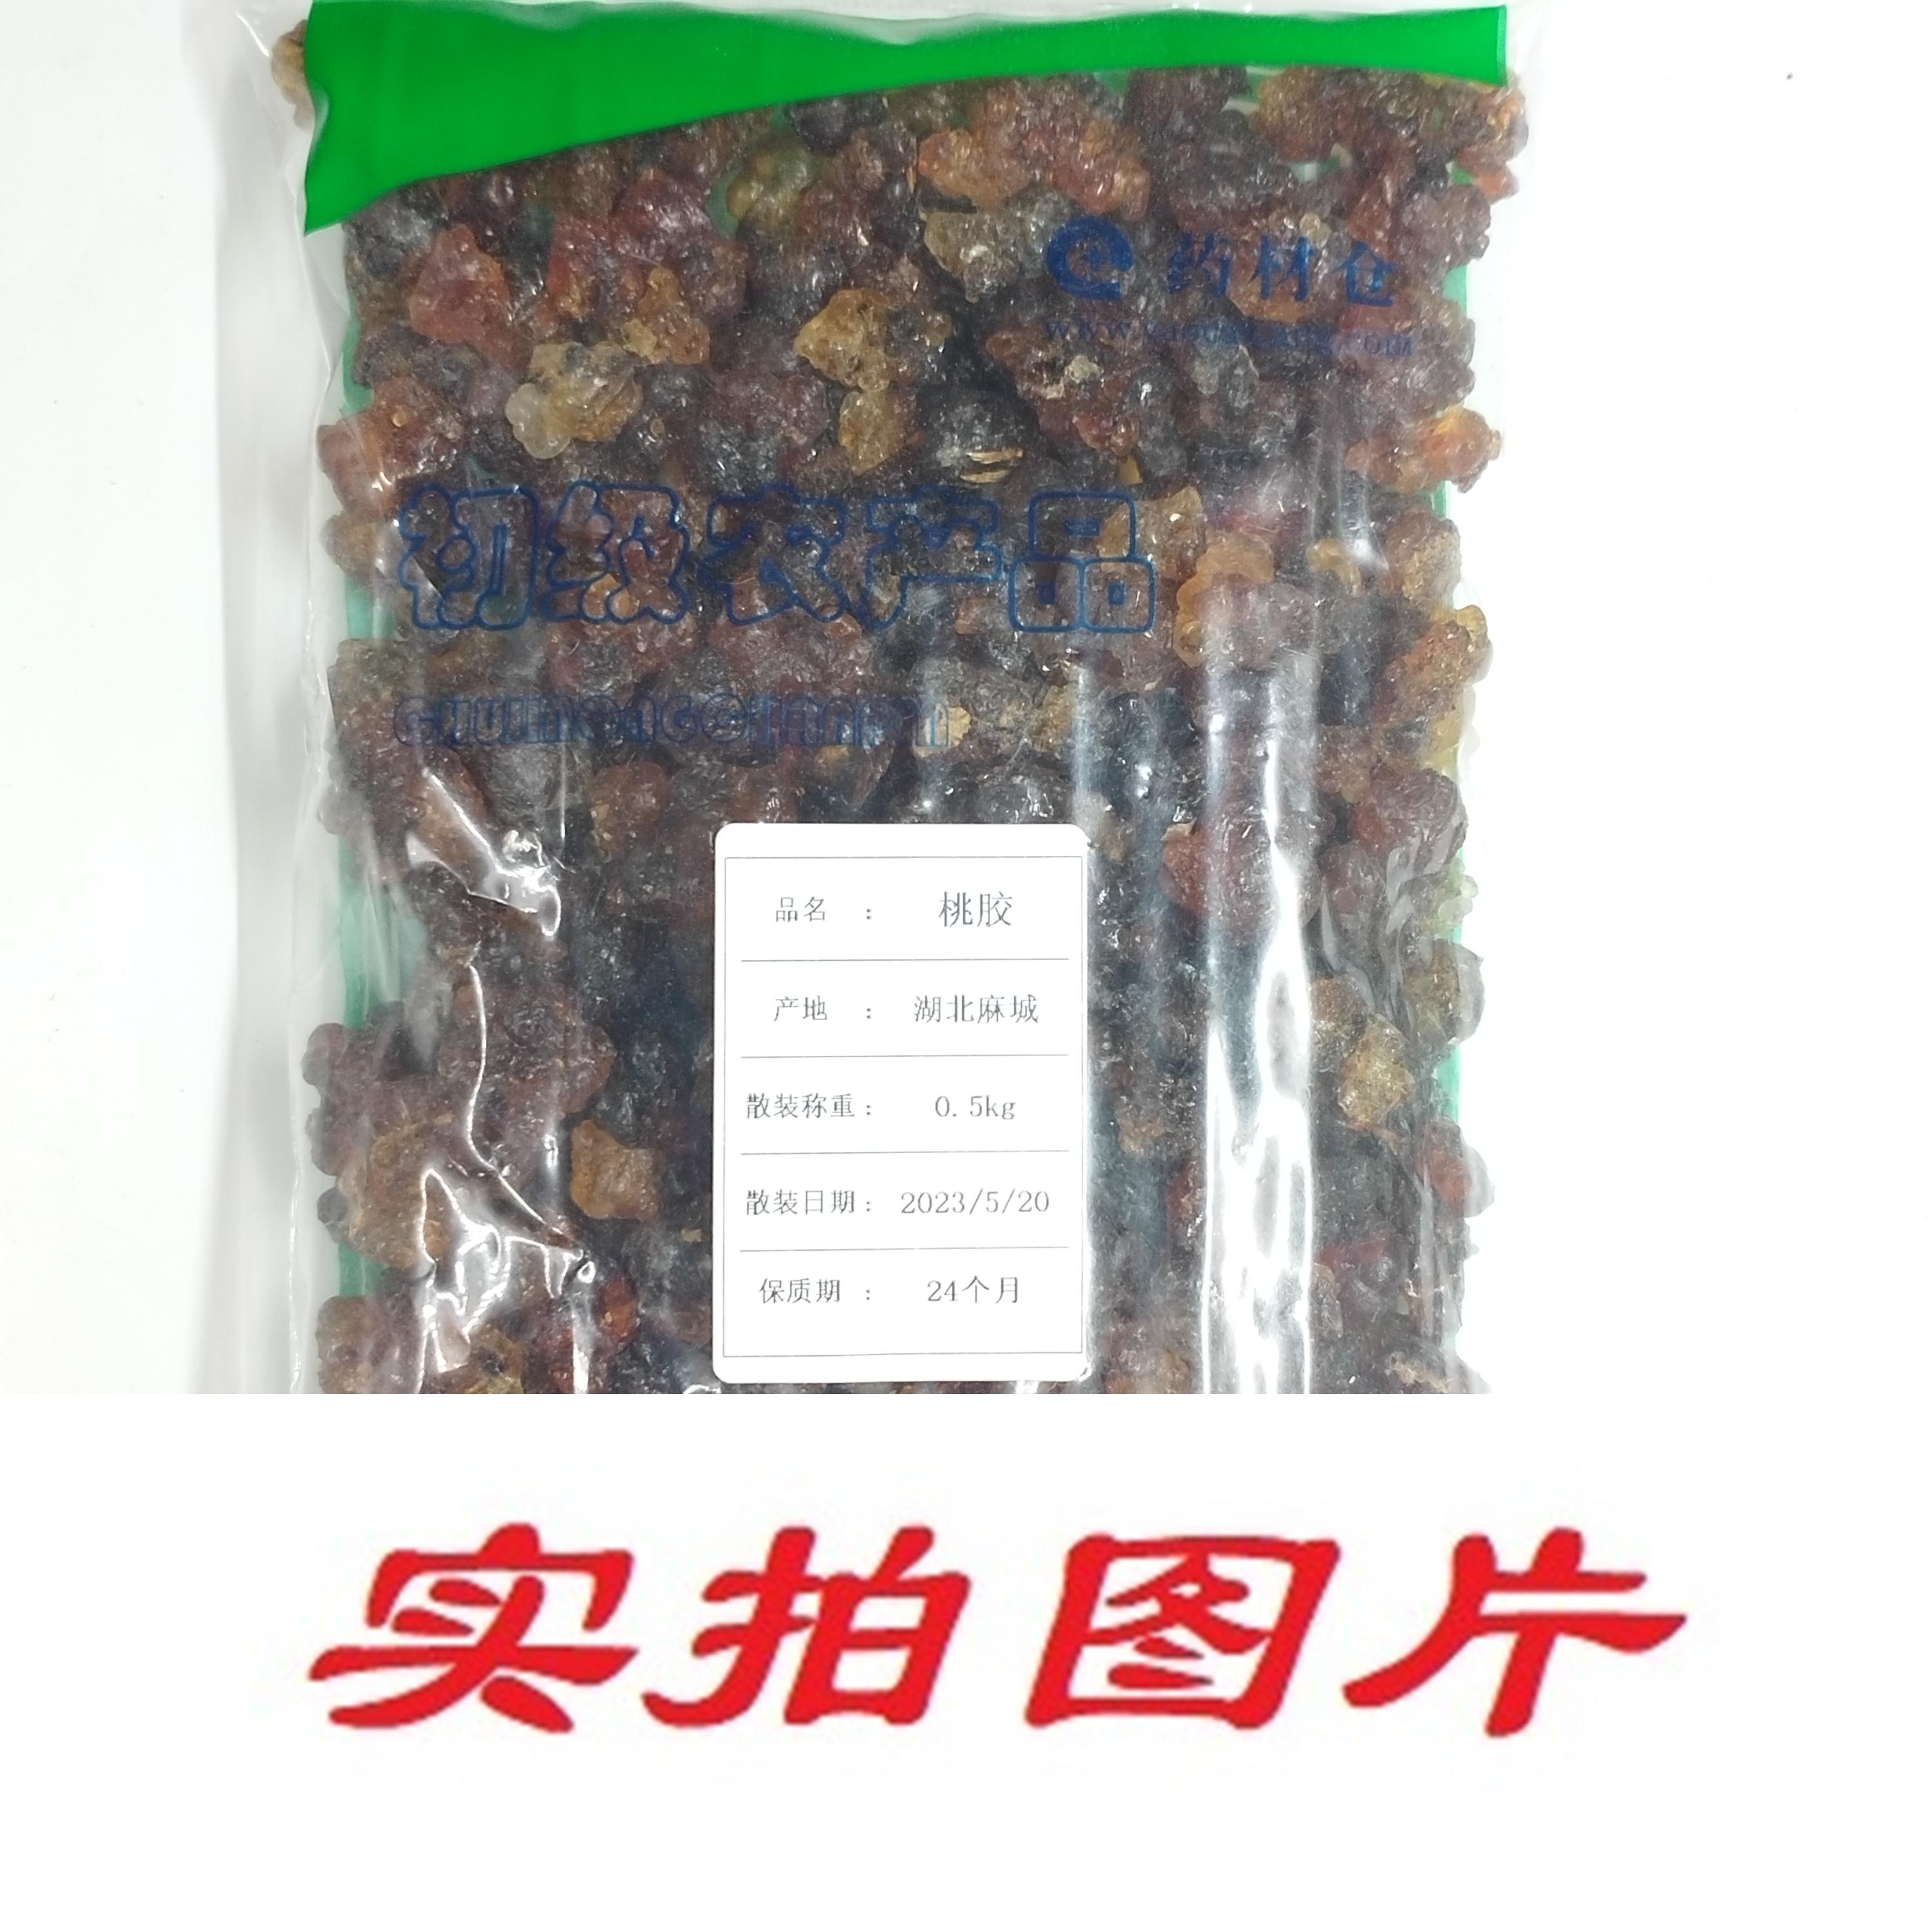 【】桃胶0.5kg-农副产品